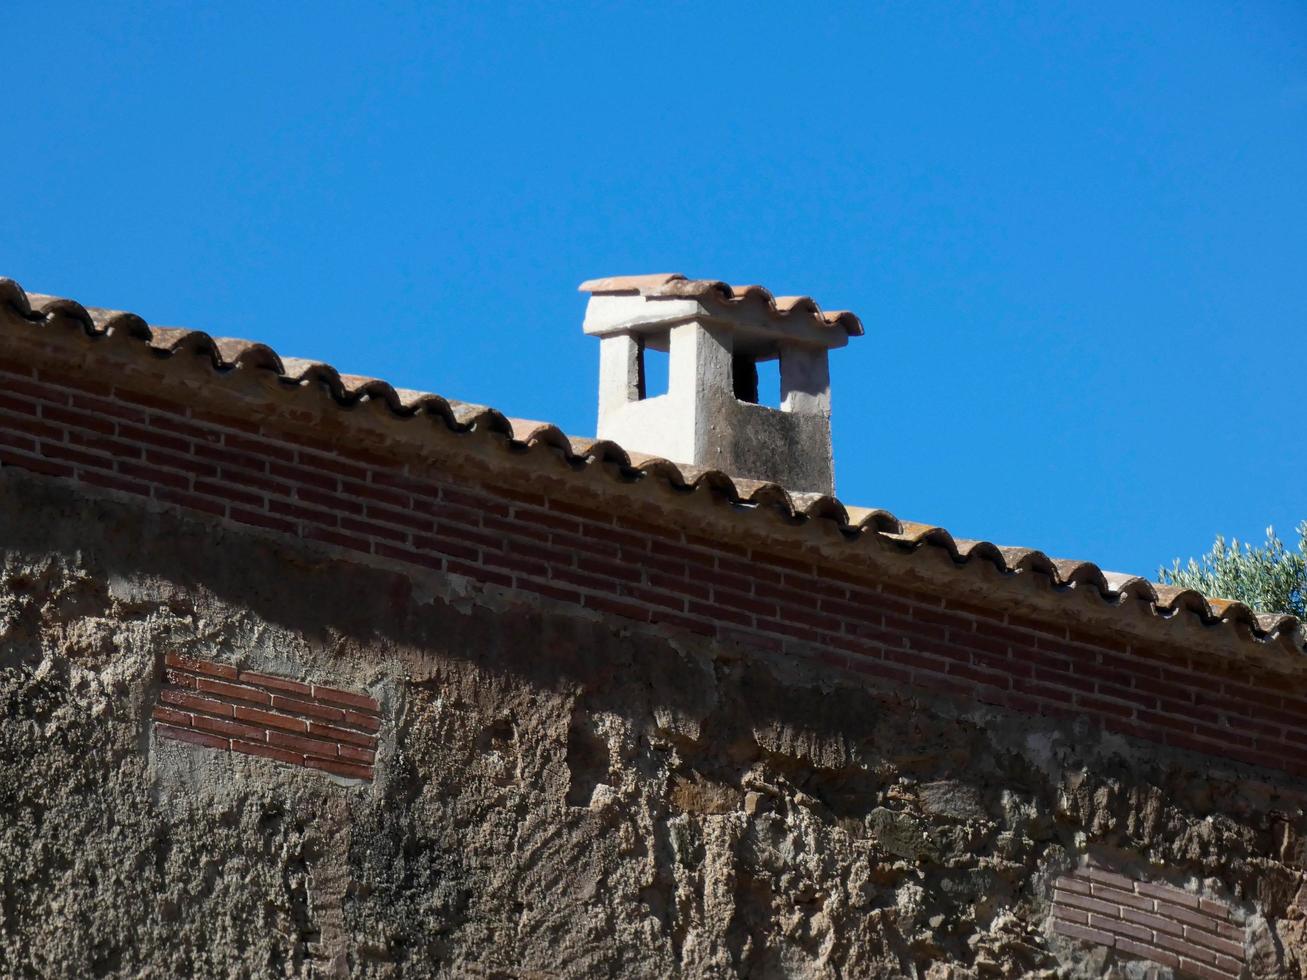 casa típica catalana de montaña en las cercanías de barcelona, españa foto